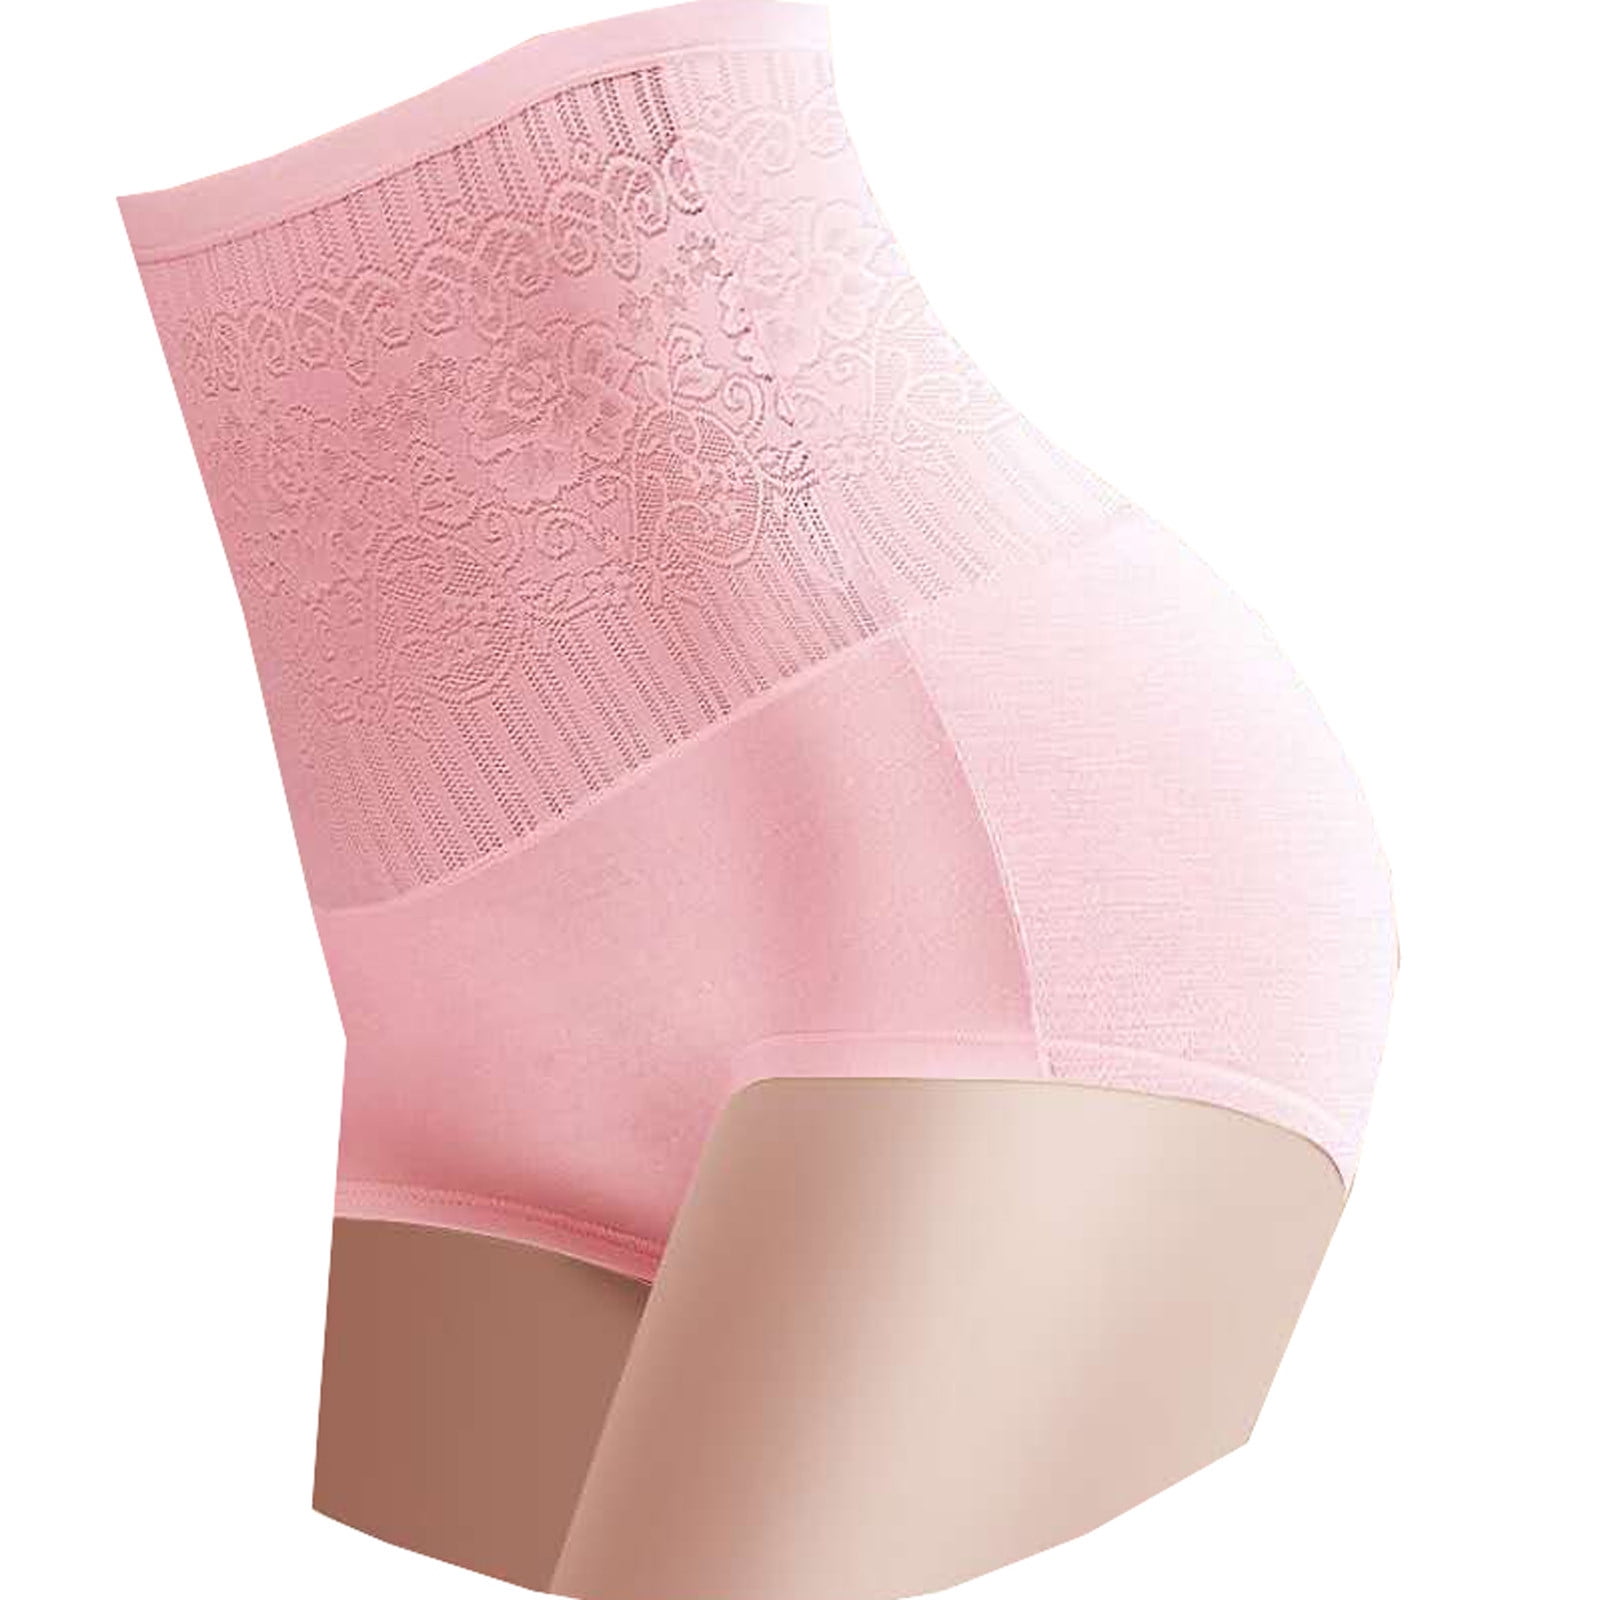 Seamless Women's Shapewear Underwear